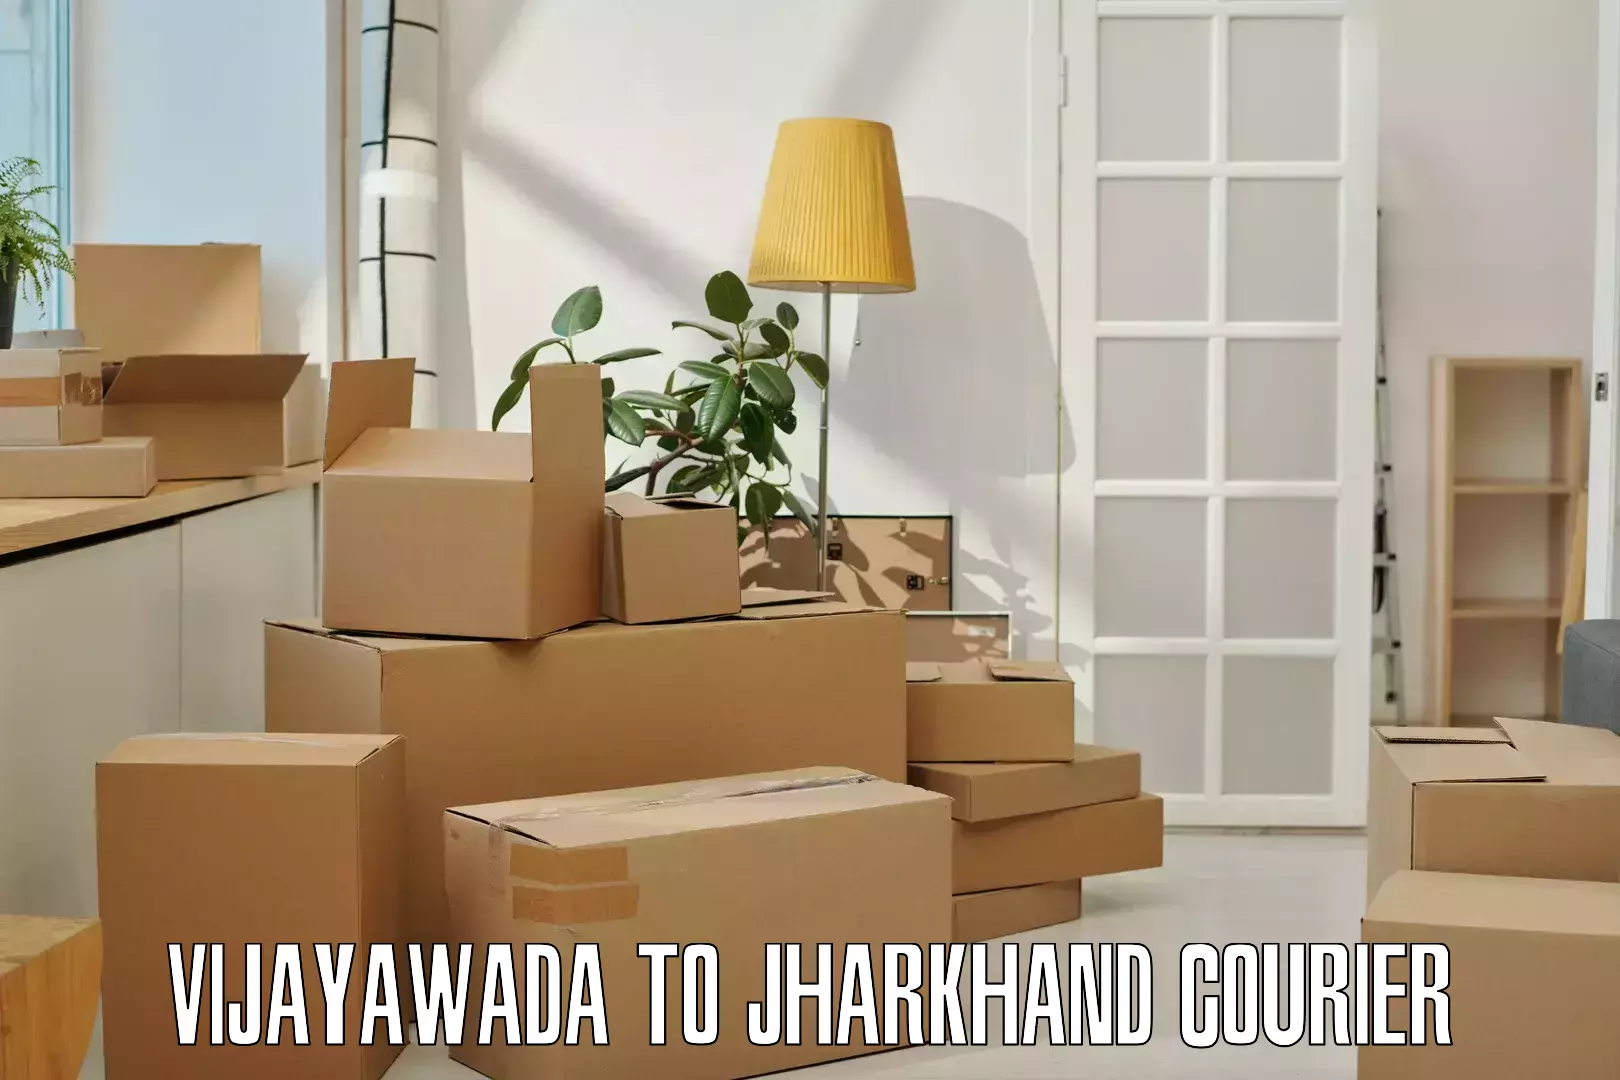 Nationwide shipping capabilities Vijayawada to IIT Dhanbad